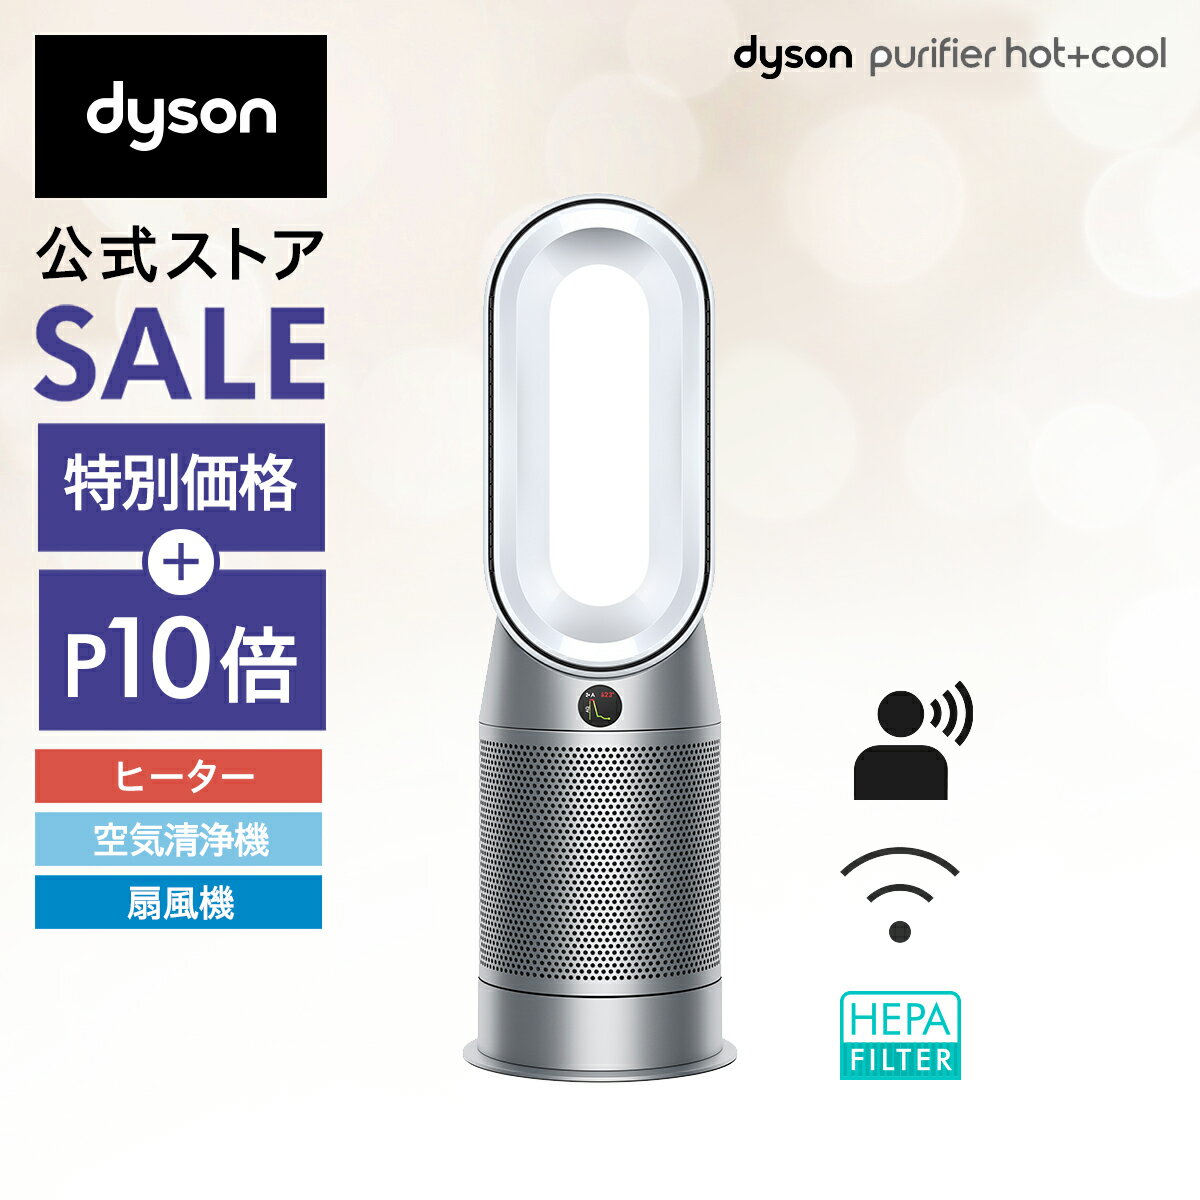 【期間限定P10倍】【Dyson上位モデル】【花粉対策製品】 ダイソン Dyson Purifier Hot+Cool HP07 WS 空気清浄ファンヒーター 空気清浄機 扇風機 暖房